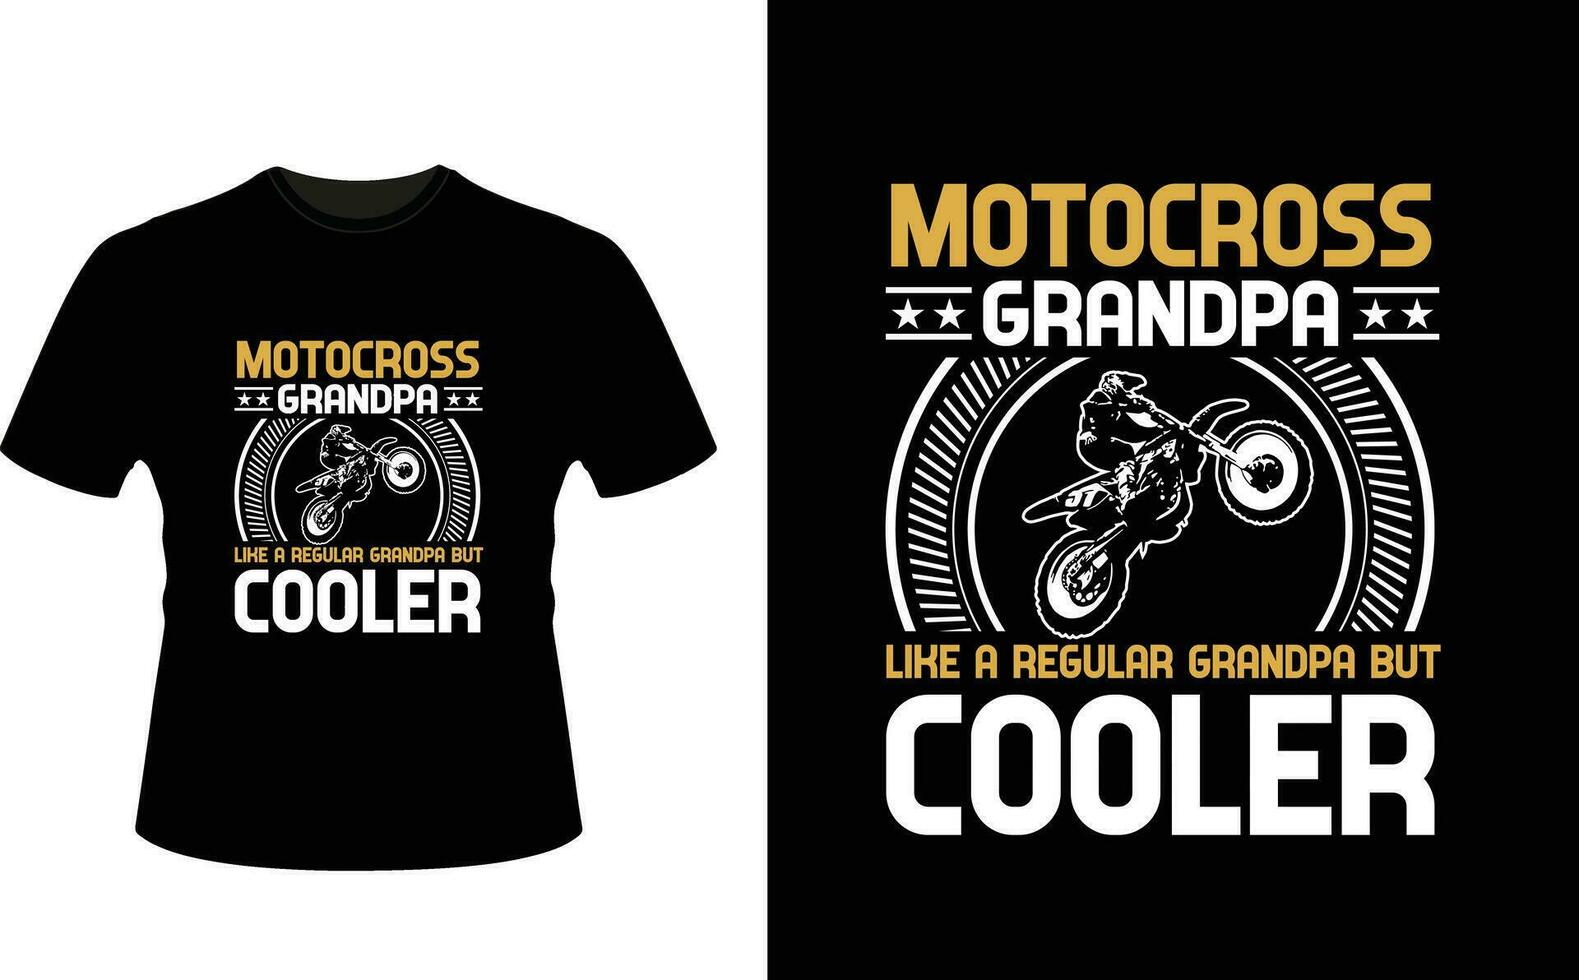 motocross ère grand-père comme une ordinaire grand-père mais glacière ou grand-père T-shirt conception ou grand-père journée t chemise conception vecteur